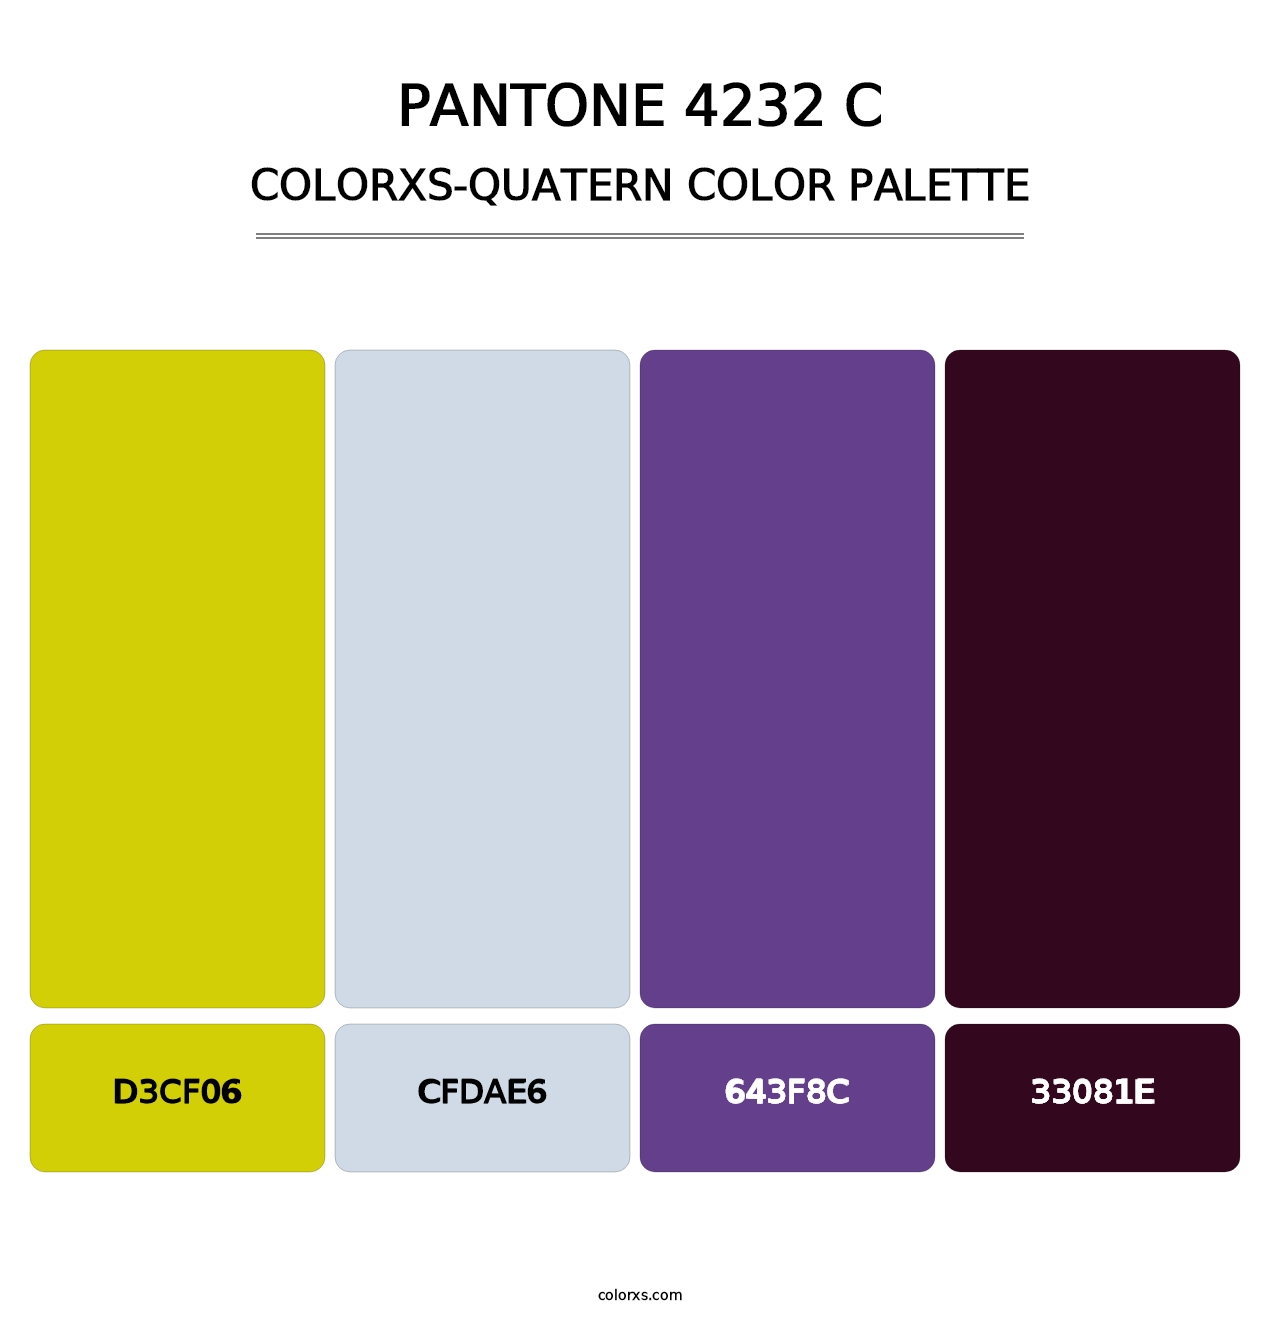 PANTONE 4232 C - Colorxs Quatern Palette